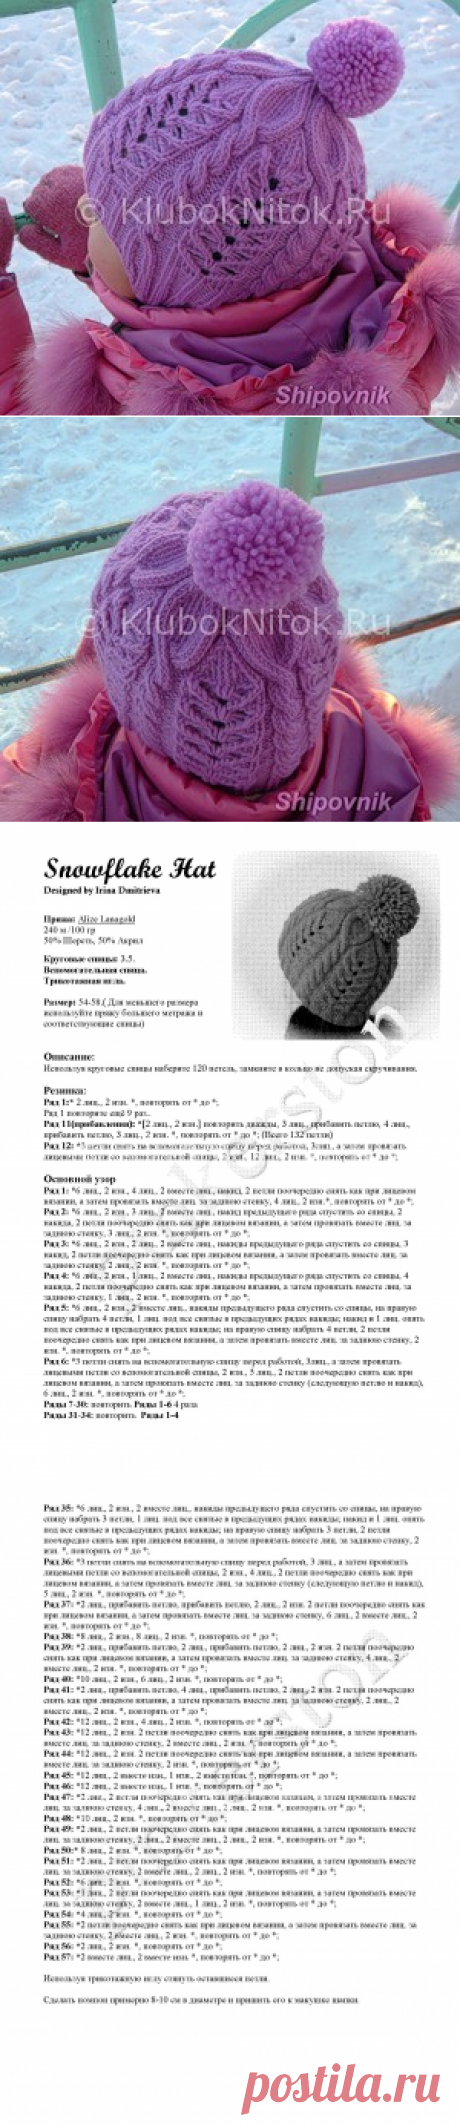 Шапочка Snowflake Hat | Вязание для девочек | Вязание спицами и крючком. Схемы вязания.